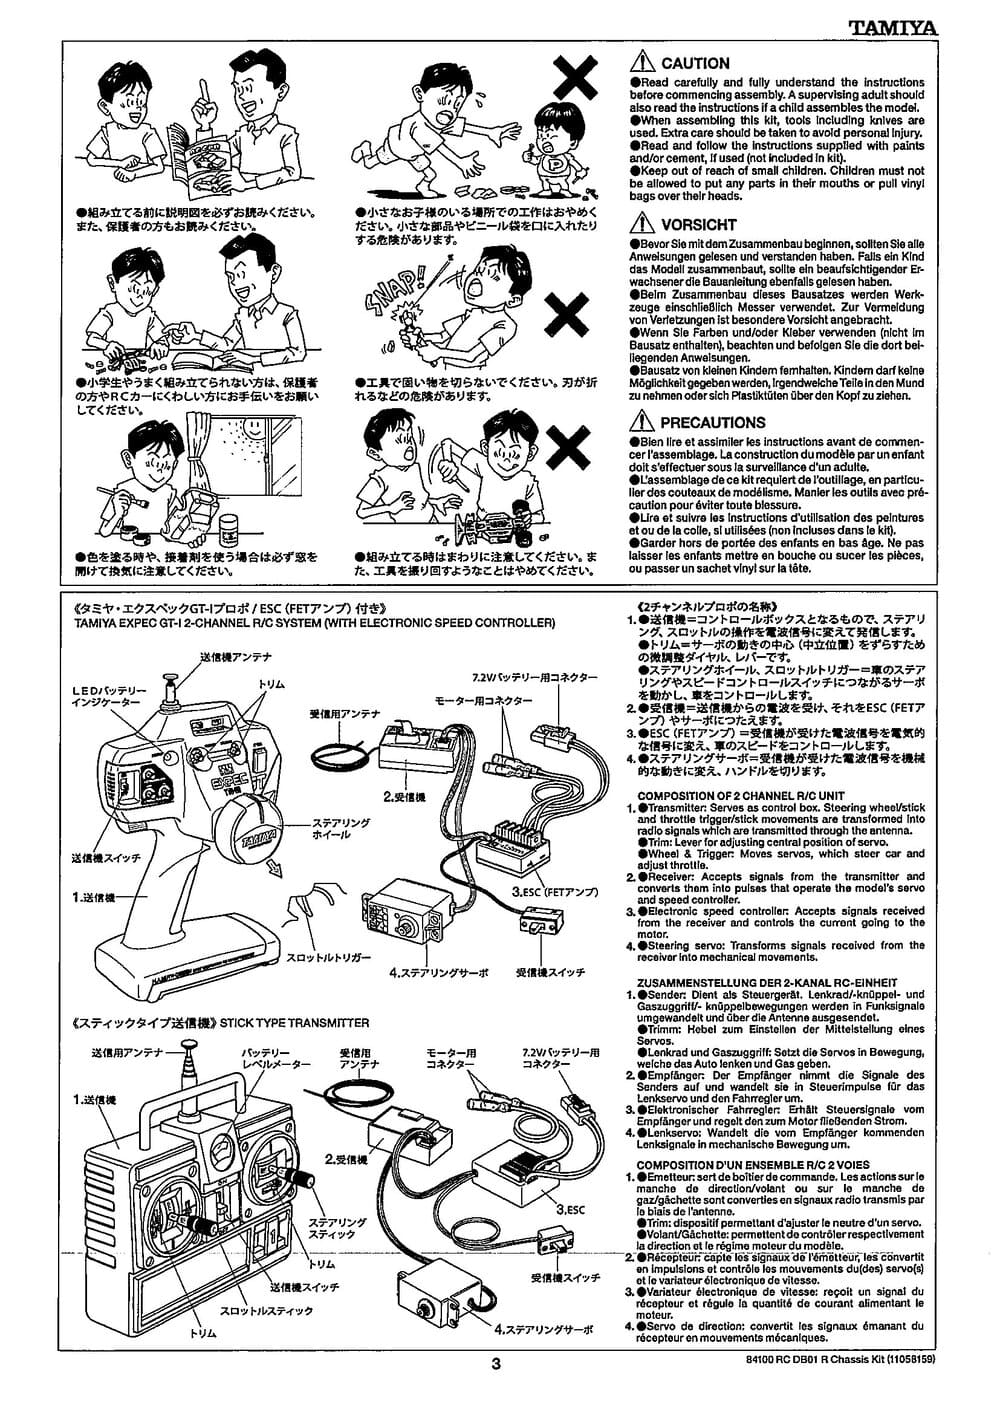 Tamiya - DB-01R Chassis - Manual - Page 3